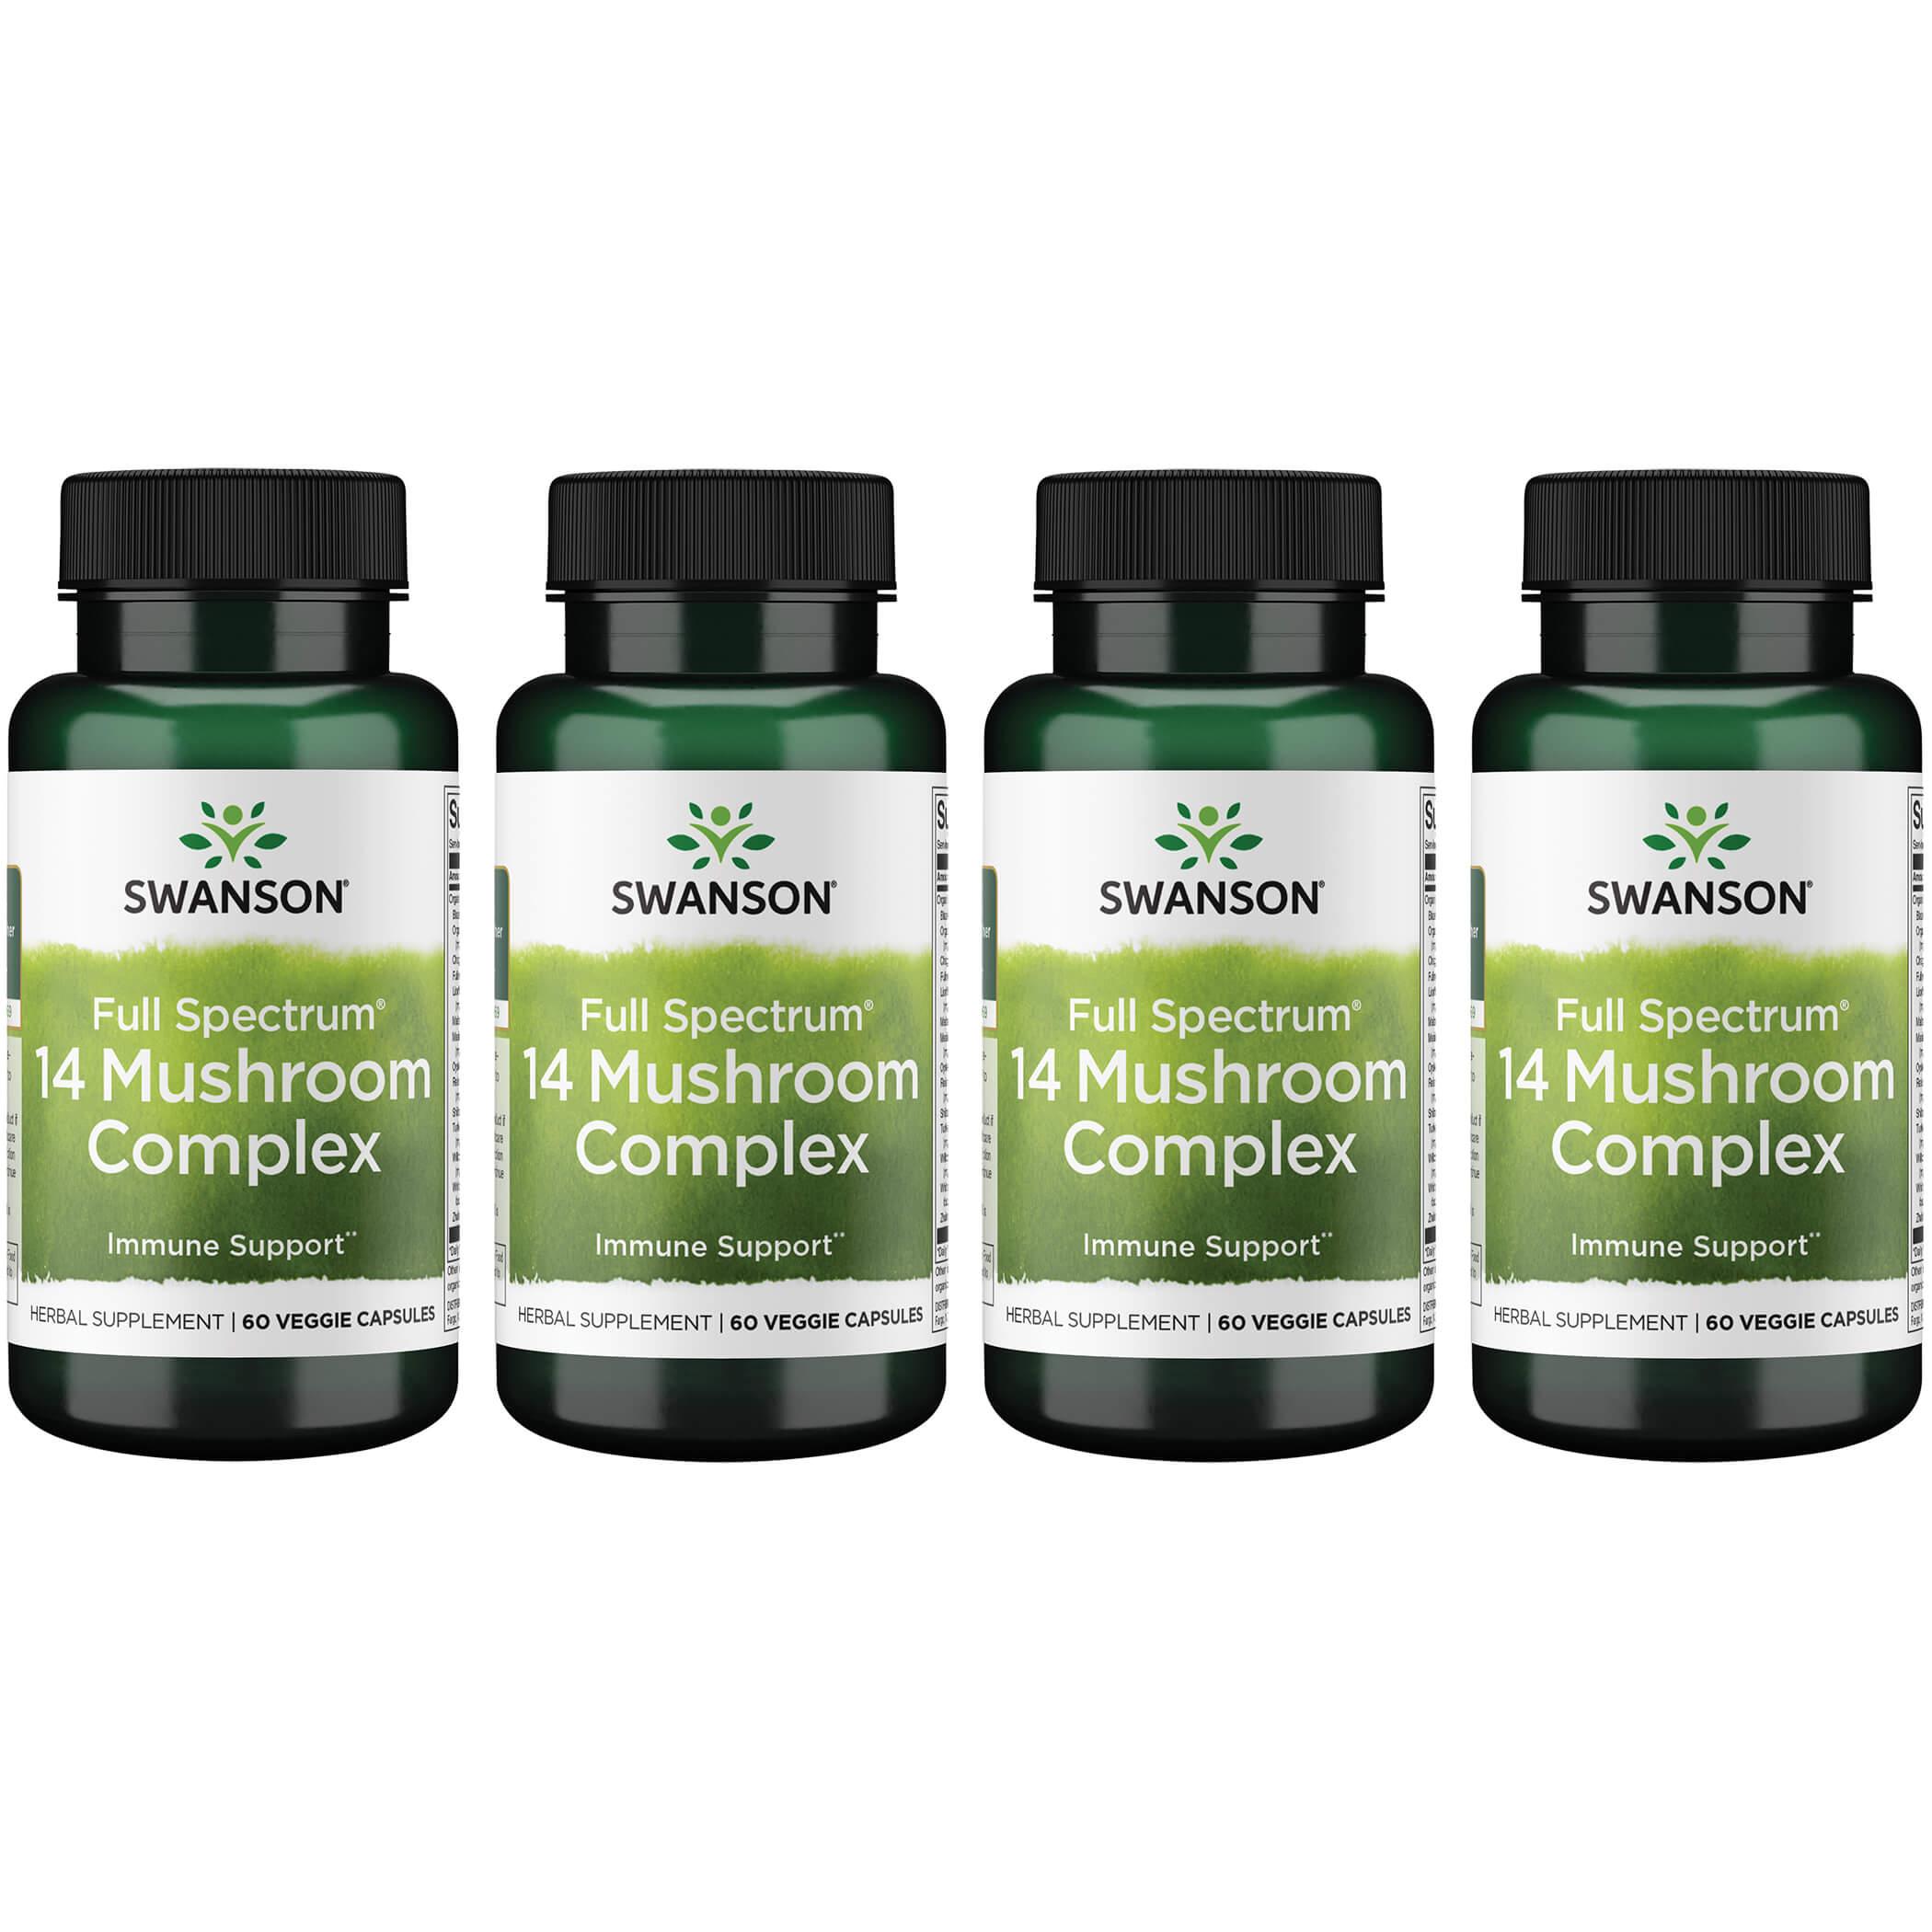 Swanson Premium Full Spectrum 14 Mushroom Complex 4 Pack Vitamin 60 Veg Caps Herbs and Supplements